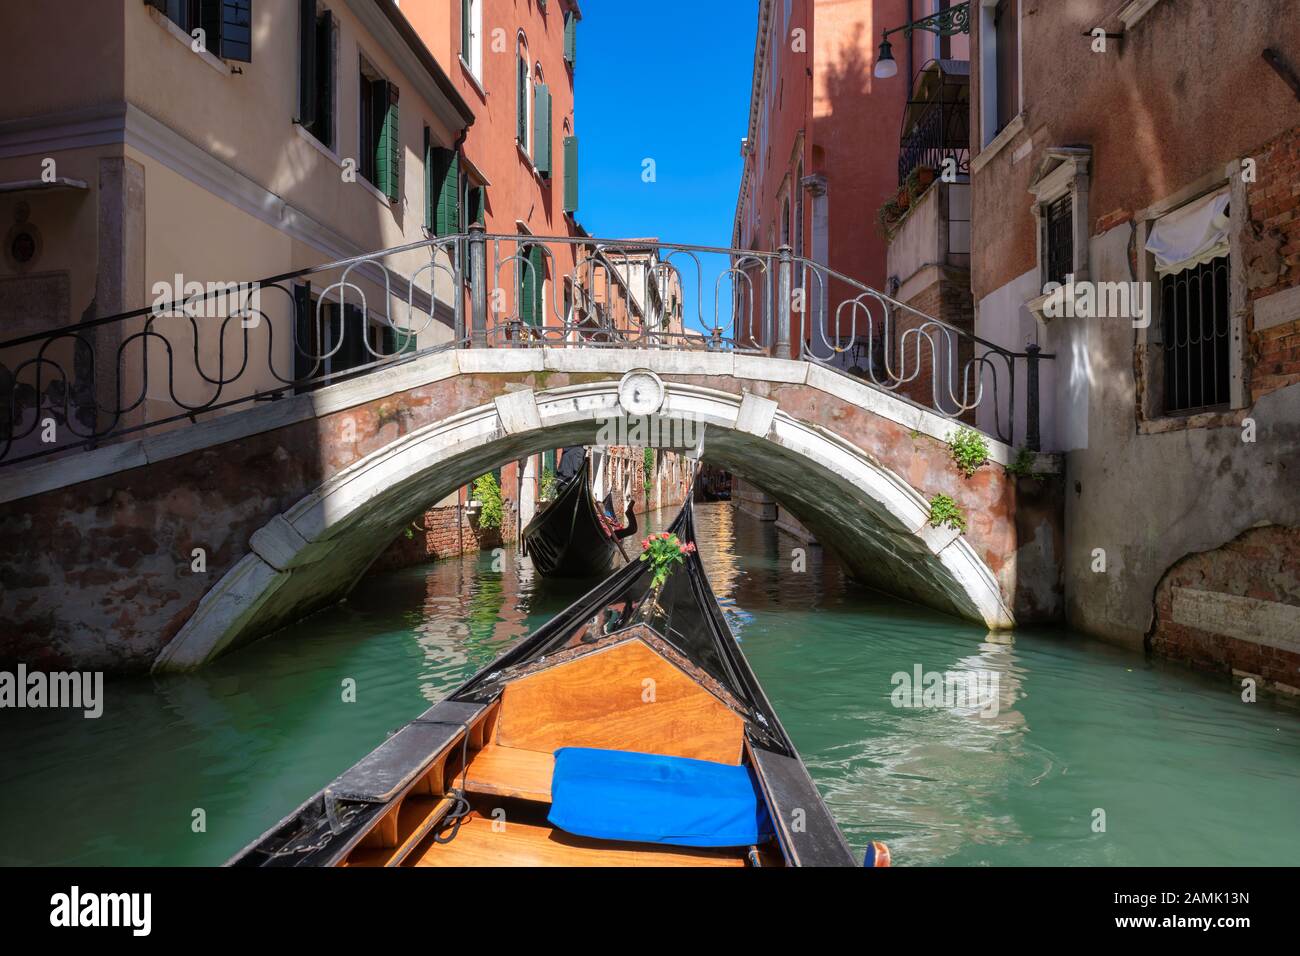 Venetian gondola on canal Venice, Italy. Stock Photo